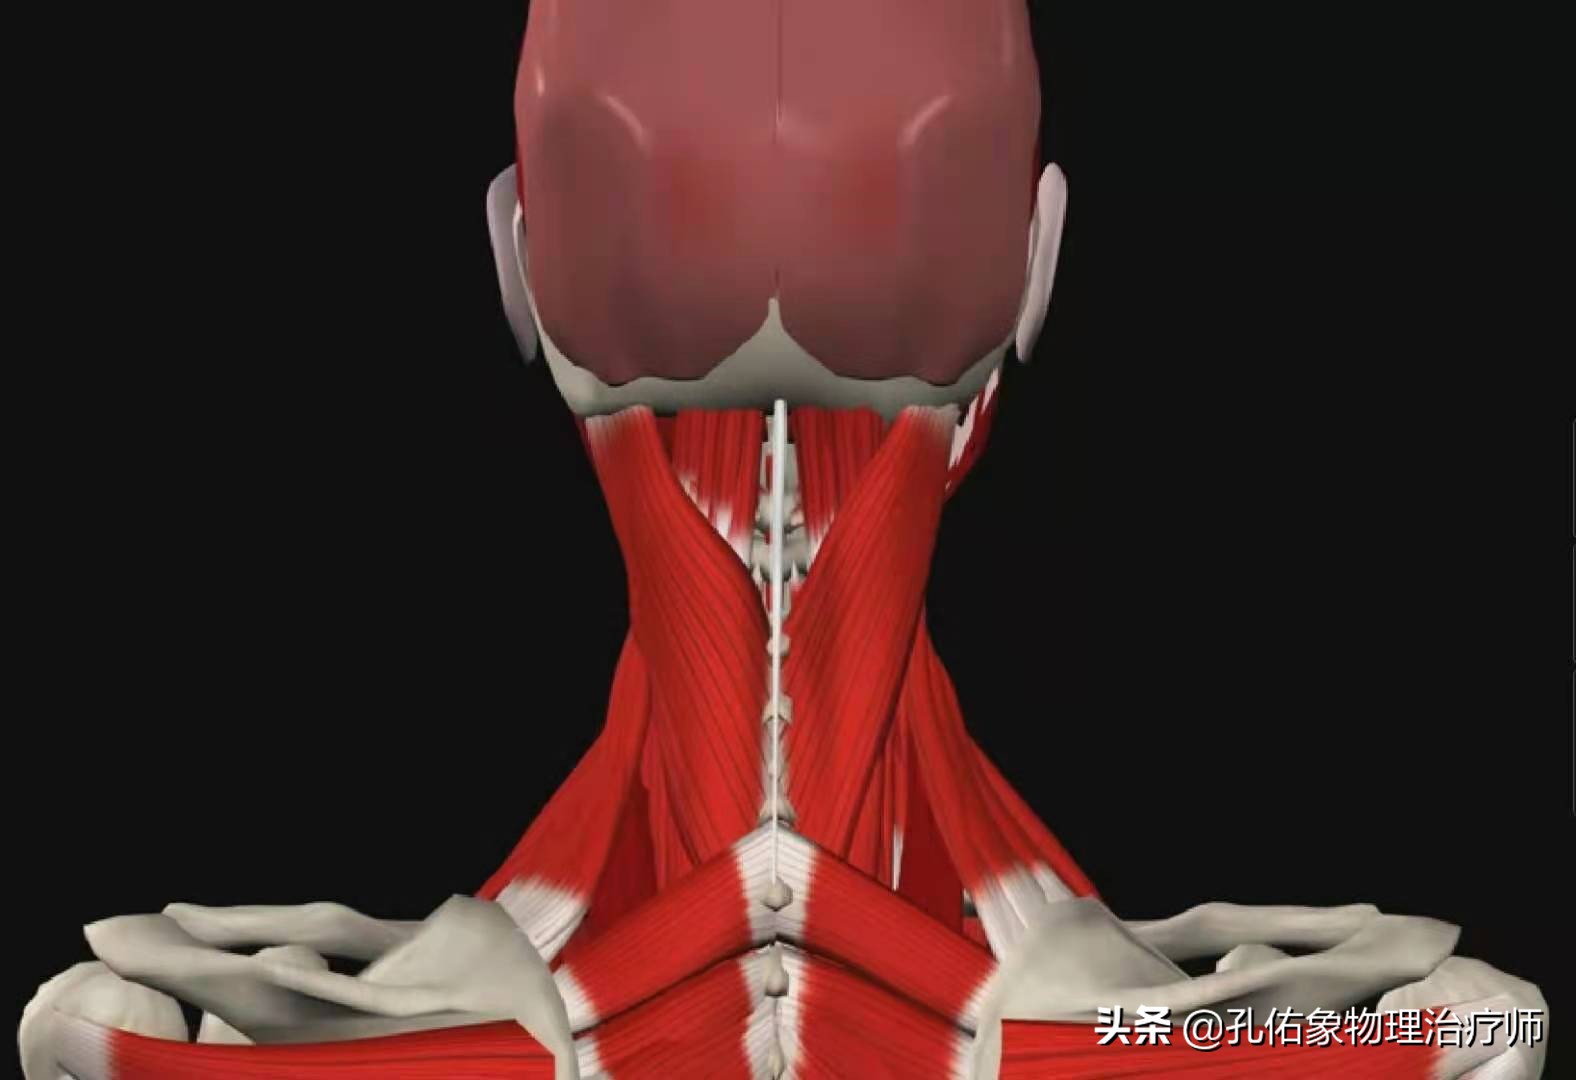 触摸脖子会有条索,硬结,这是因为在我们颈椎骨性结构上有韧带,关节囊